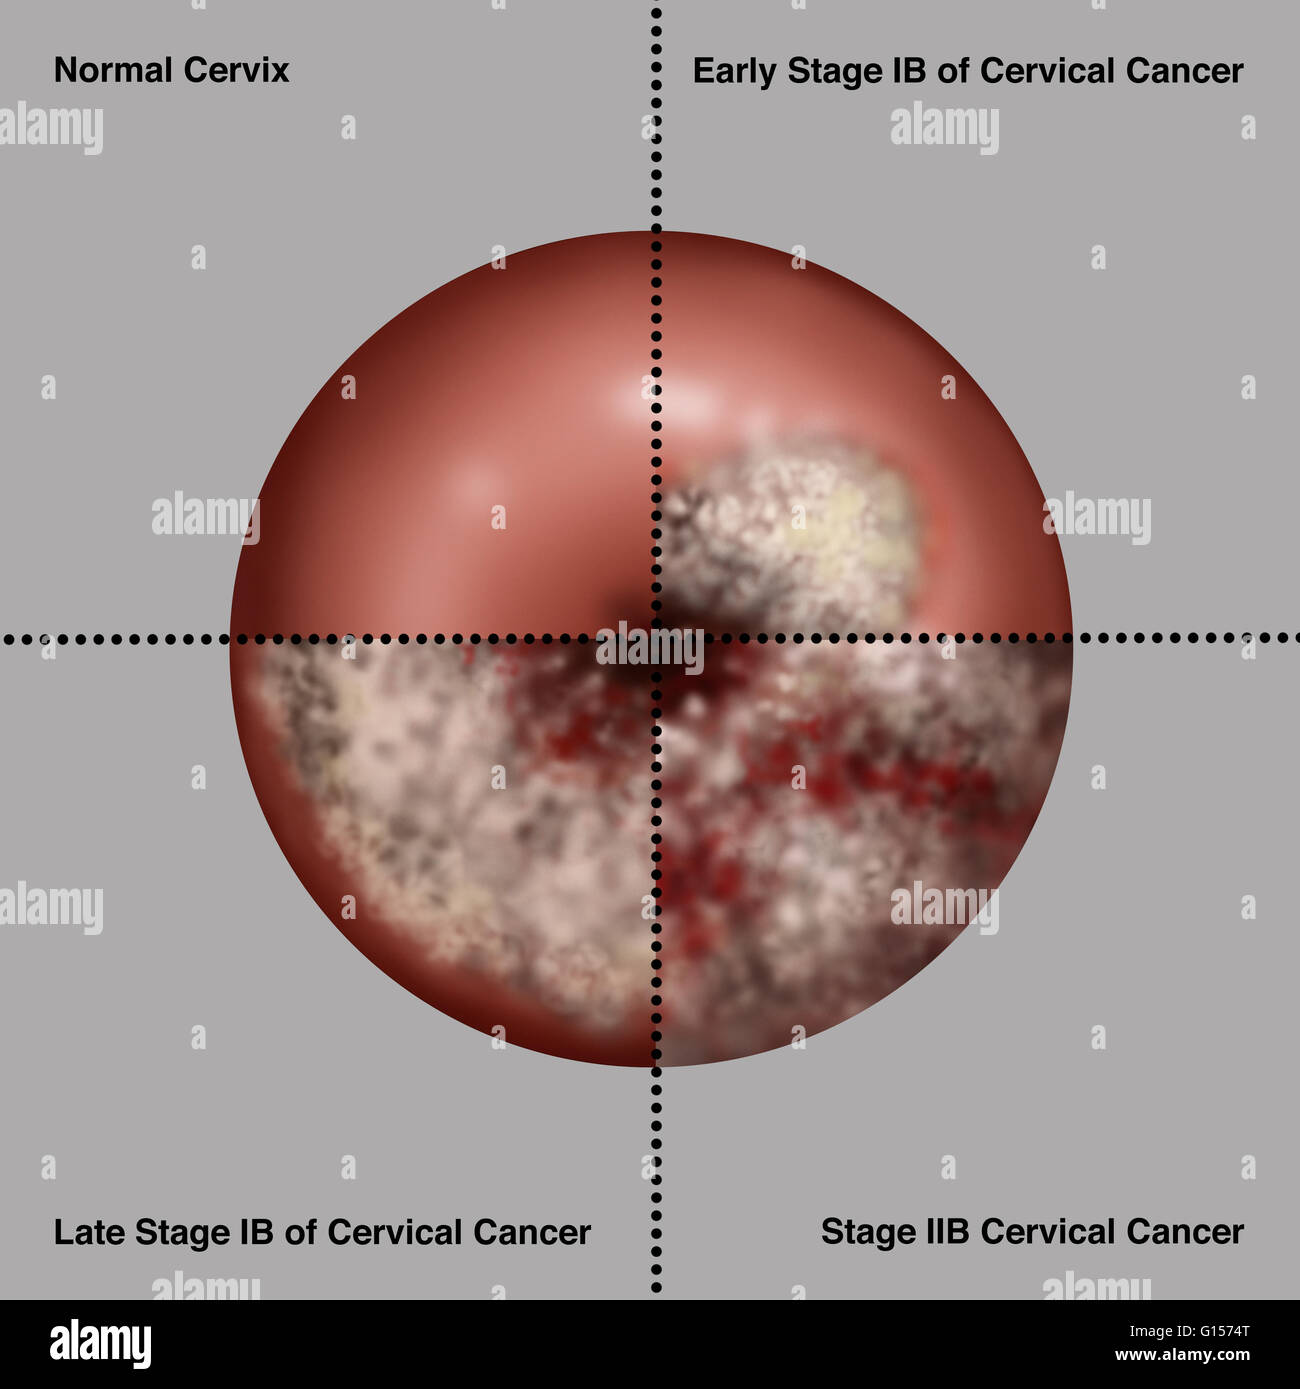 Illustration Showing The Progression Of Cervical Cancer Upper Left